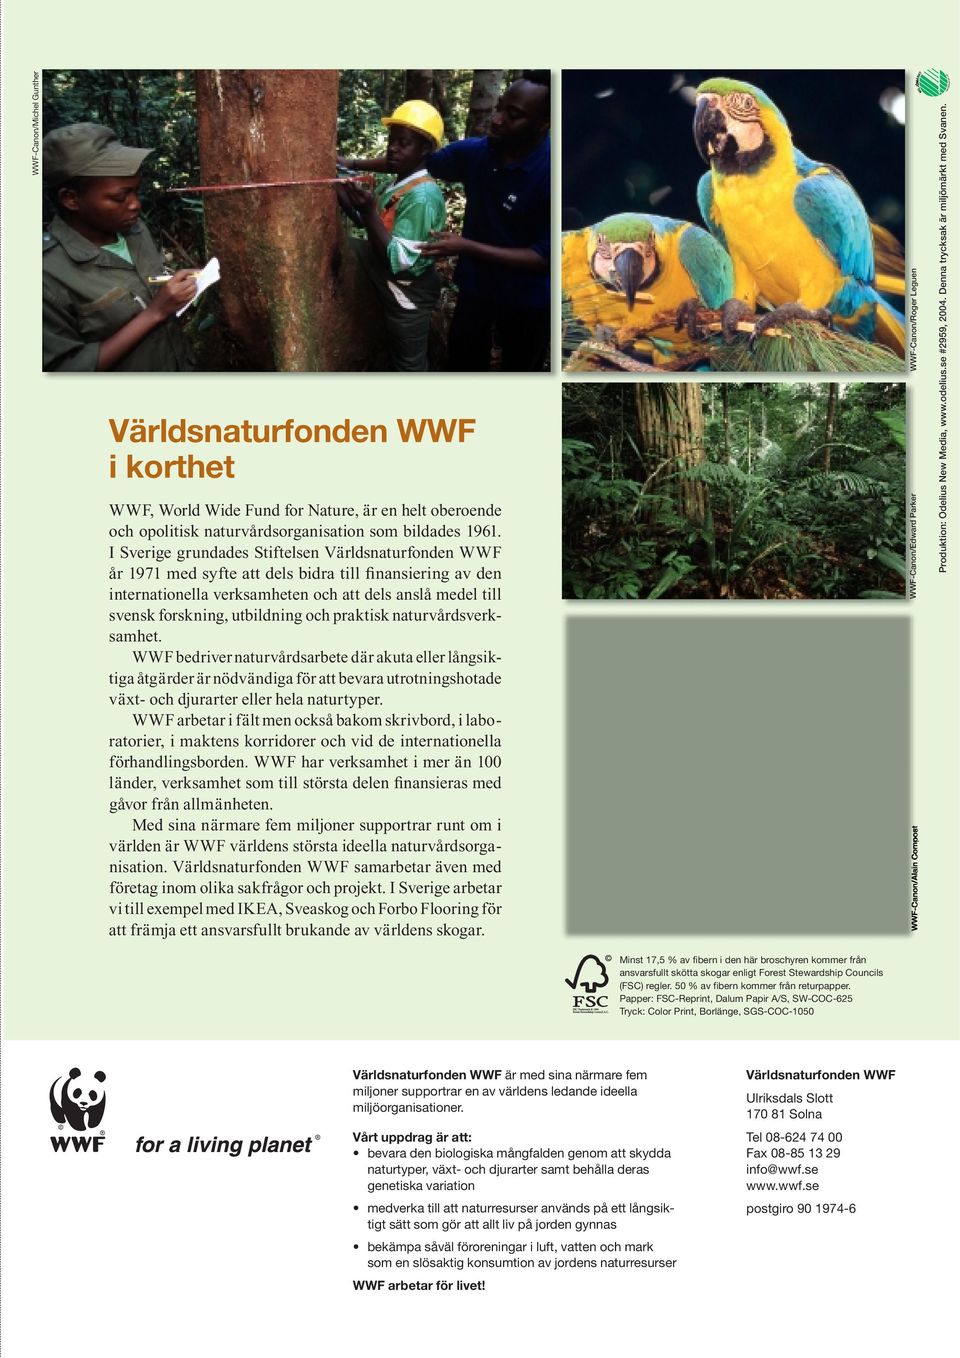 och praktisk naturvårdsverksamhet. WWF bedriver naturvårdsarbete där akuta eller långsiktiga åtgärder är nödvändiga för att bevara utrotningshotade växt- och djurarter eller hela naturtyper.